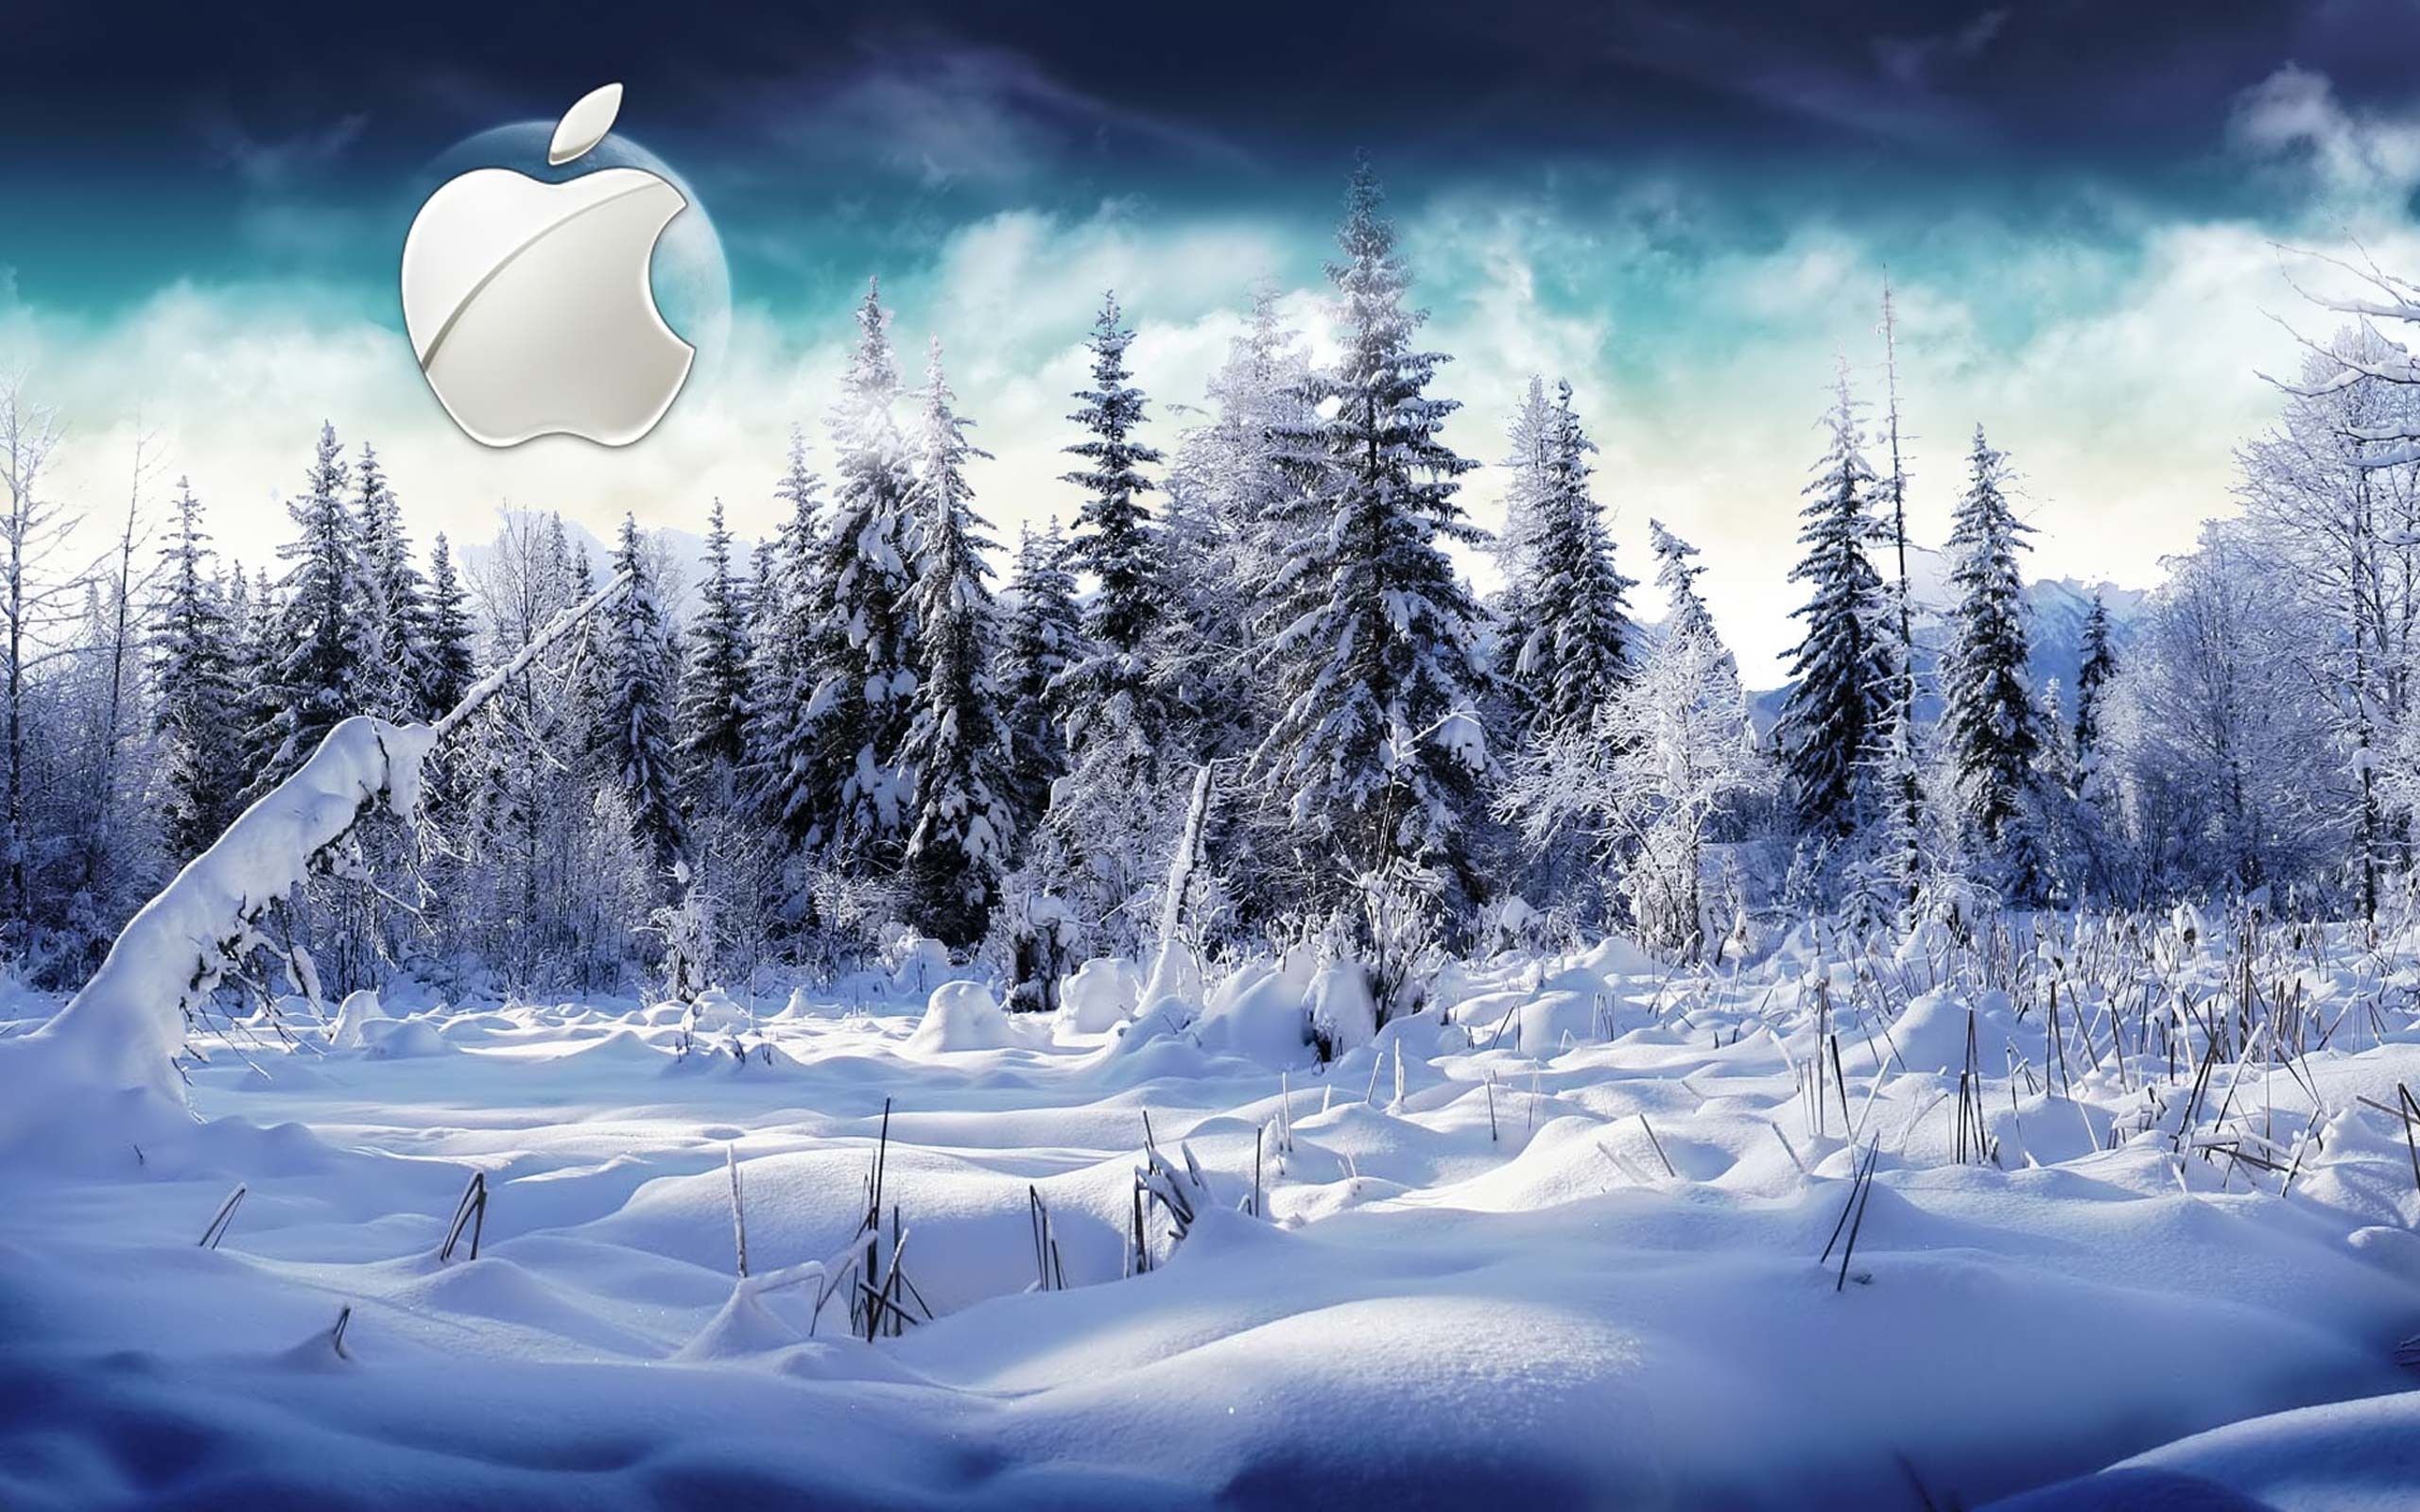 Desktop Wallpaper Gallery Computers Winter Apple Mac